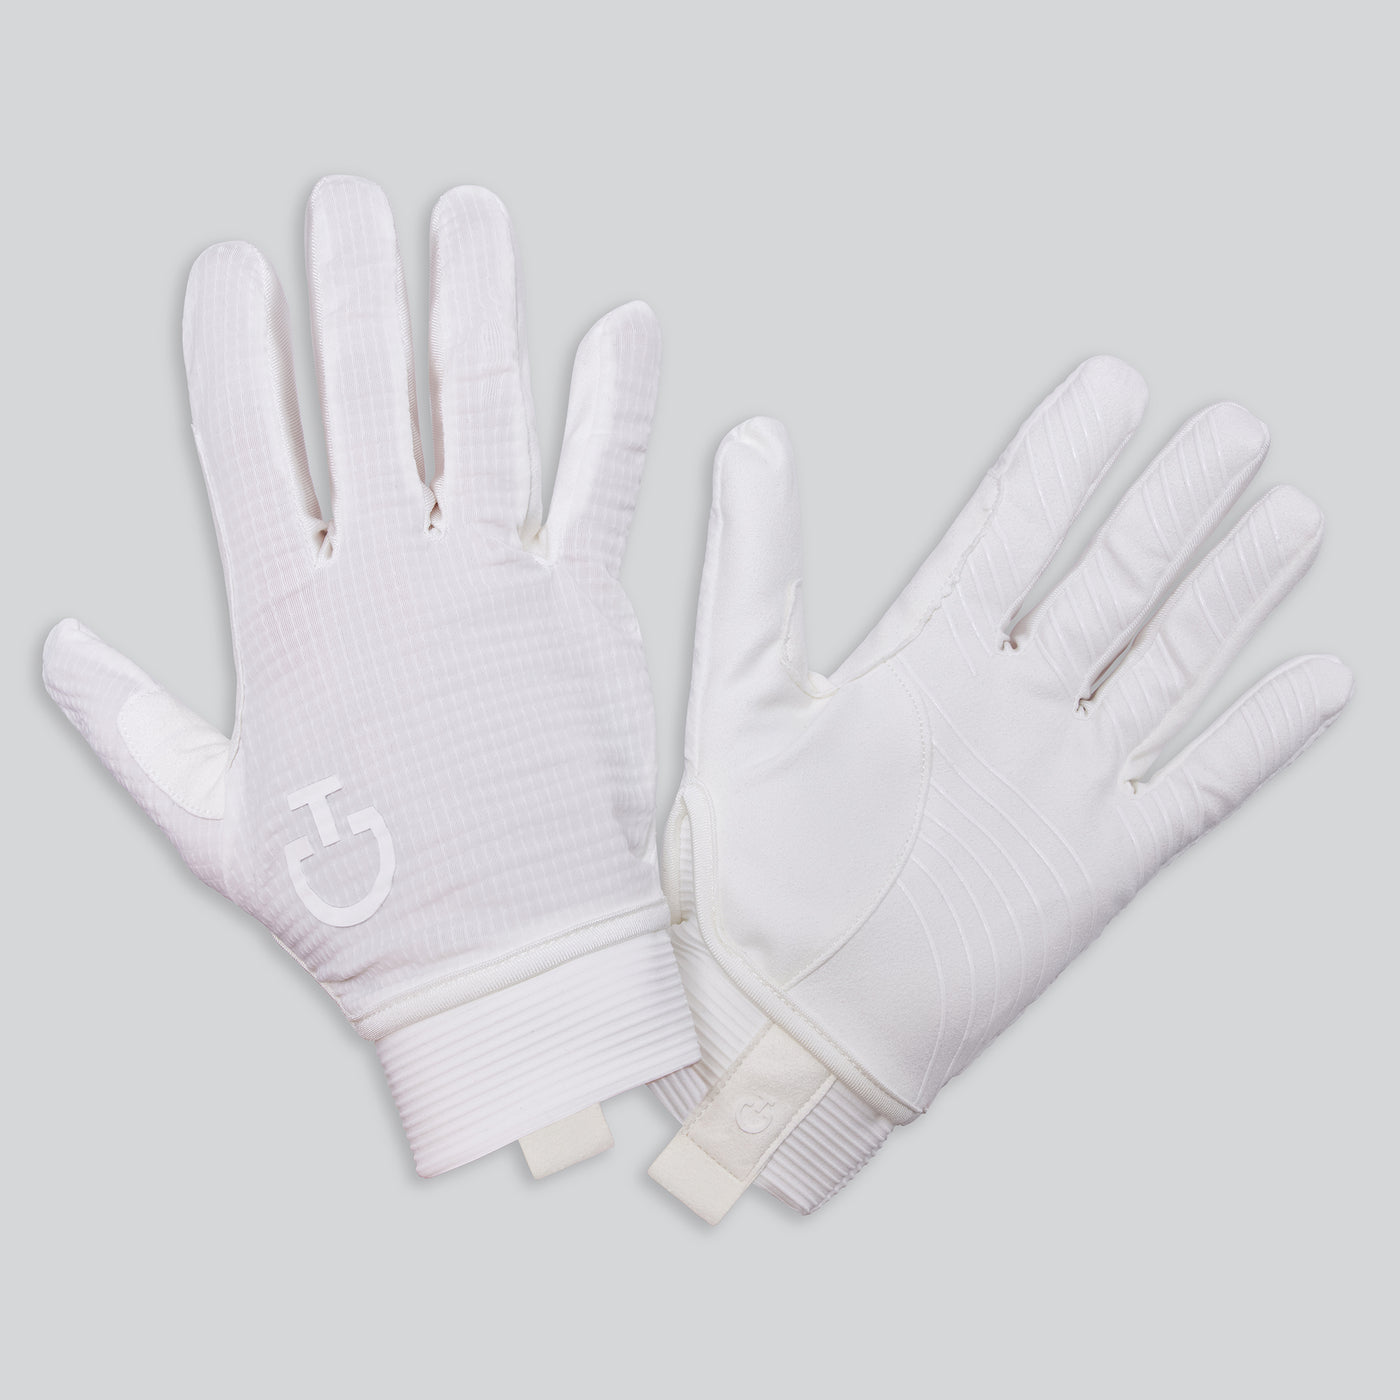 CT Grip Gloves